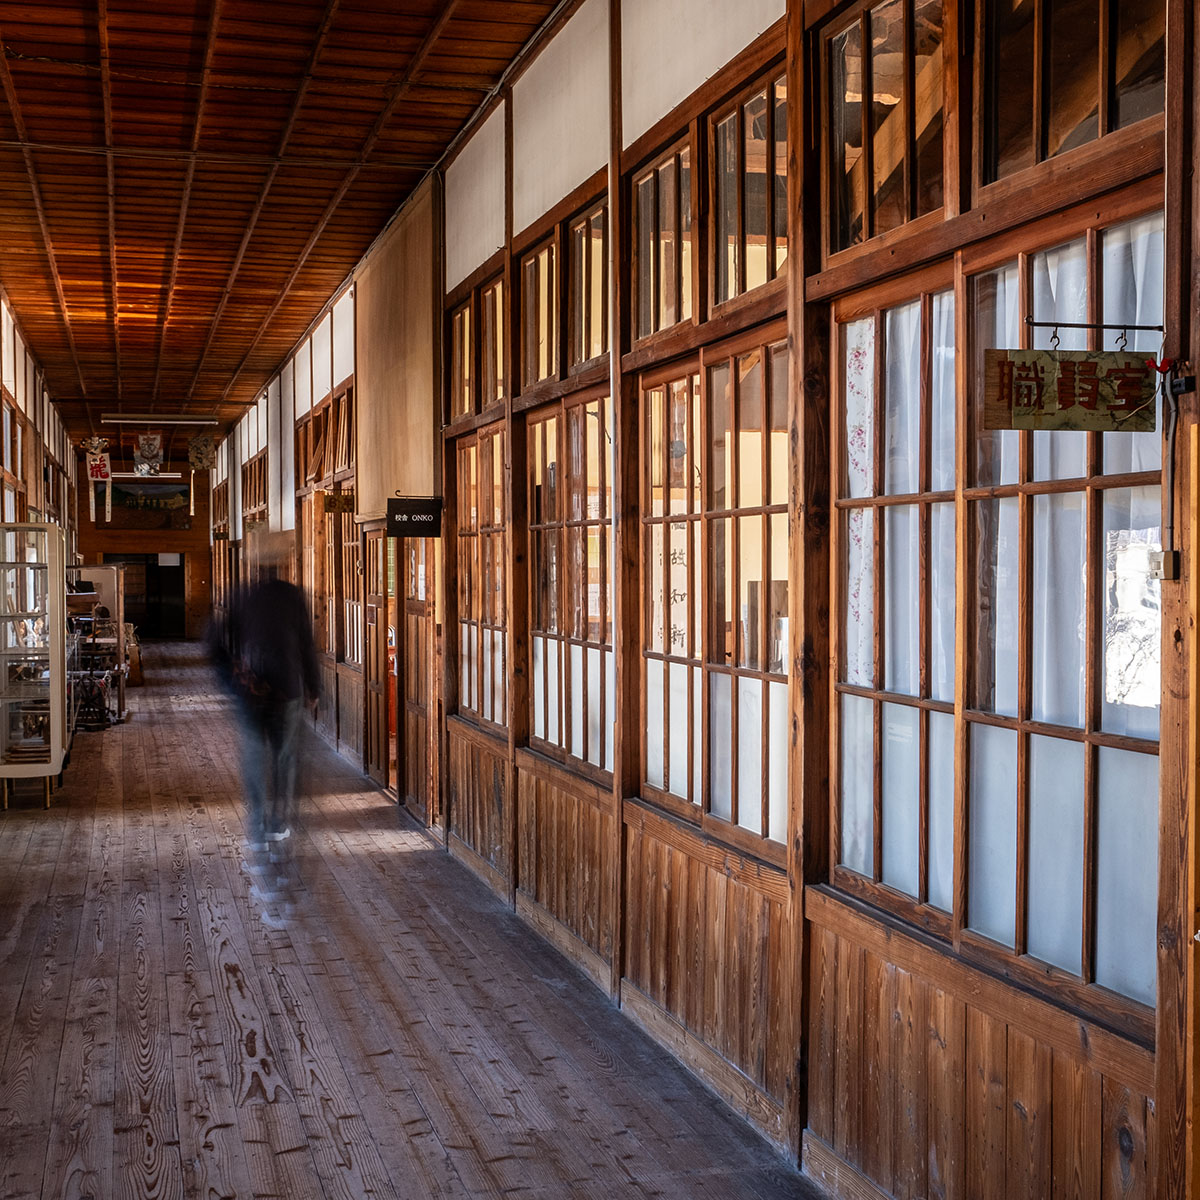 昭和のサロン、教室、民家などに分かれた館内。校舎入り口部分のモダンな造りも印象深い。